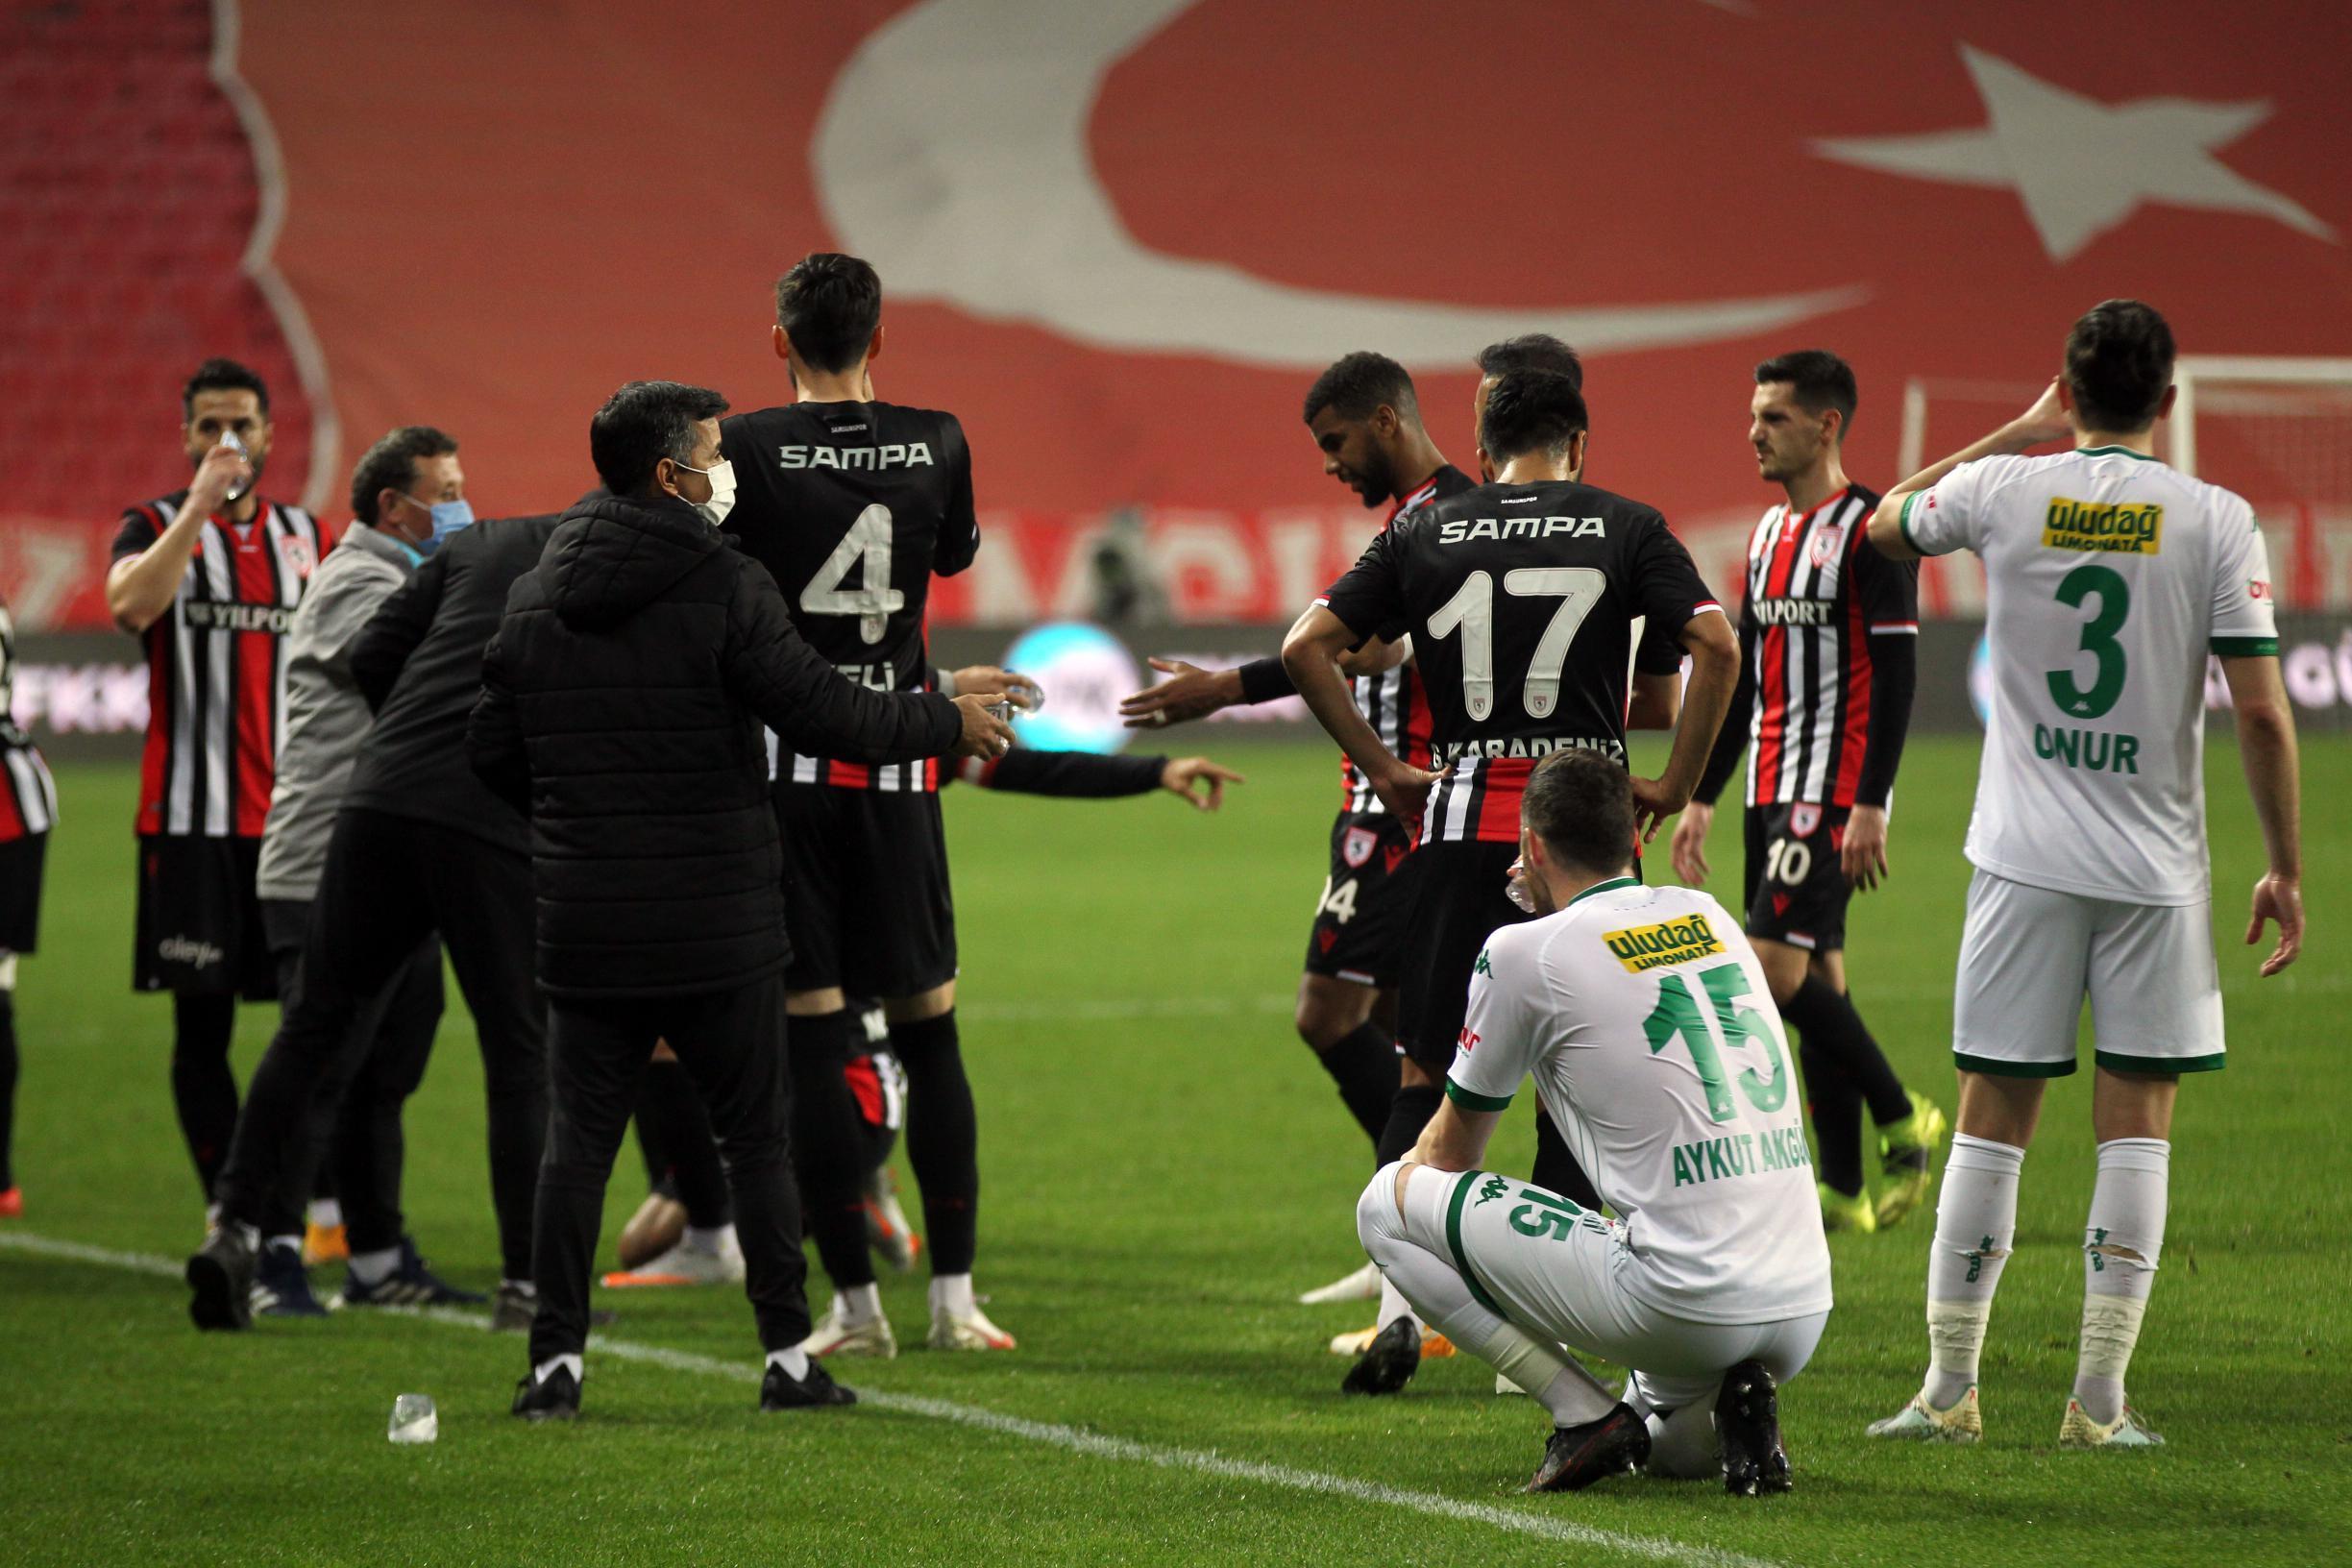 (ÖZET) Samsunspor-Bursaspor maç sonucu: 4-1